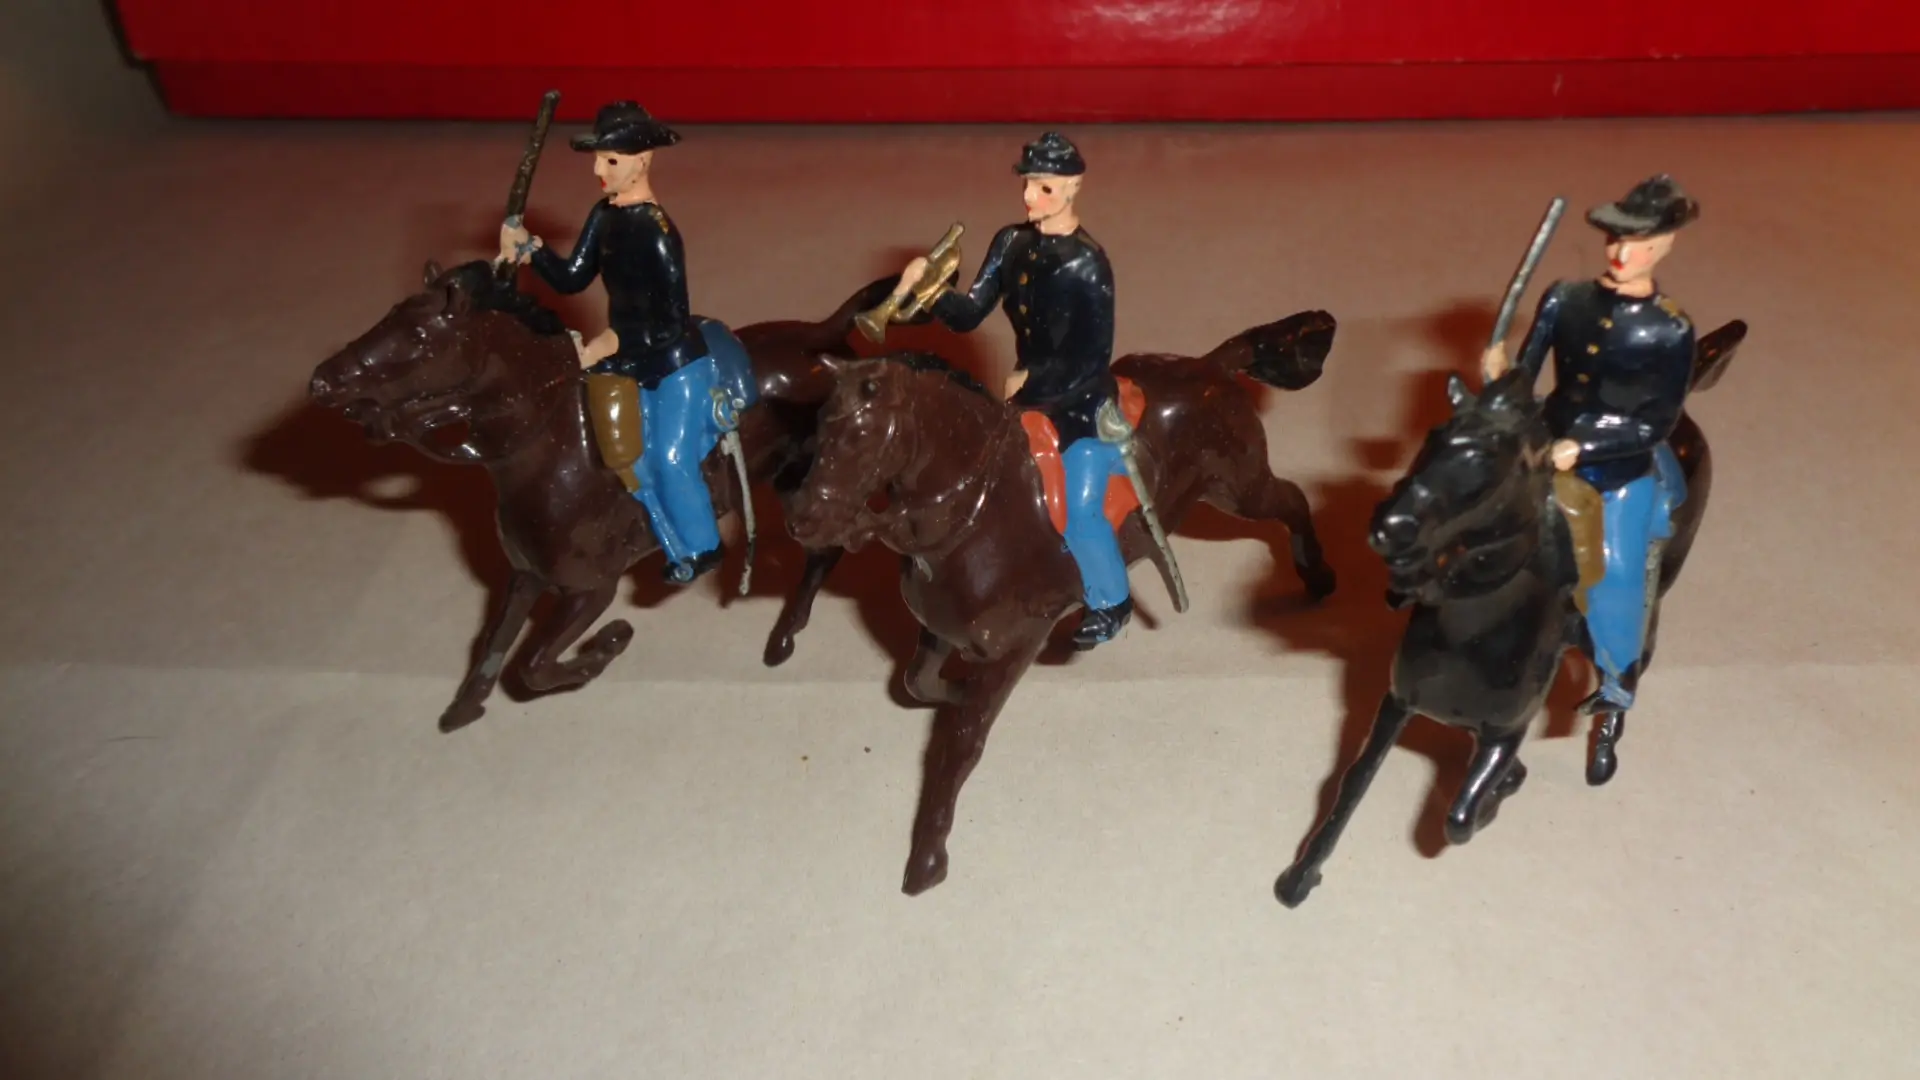 Vintage toy British soldiers